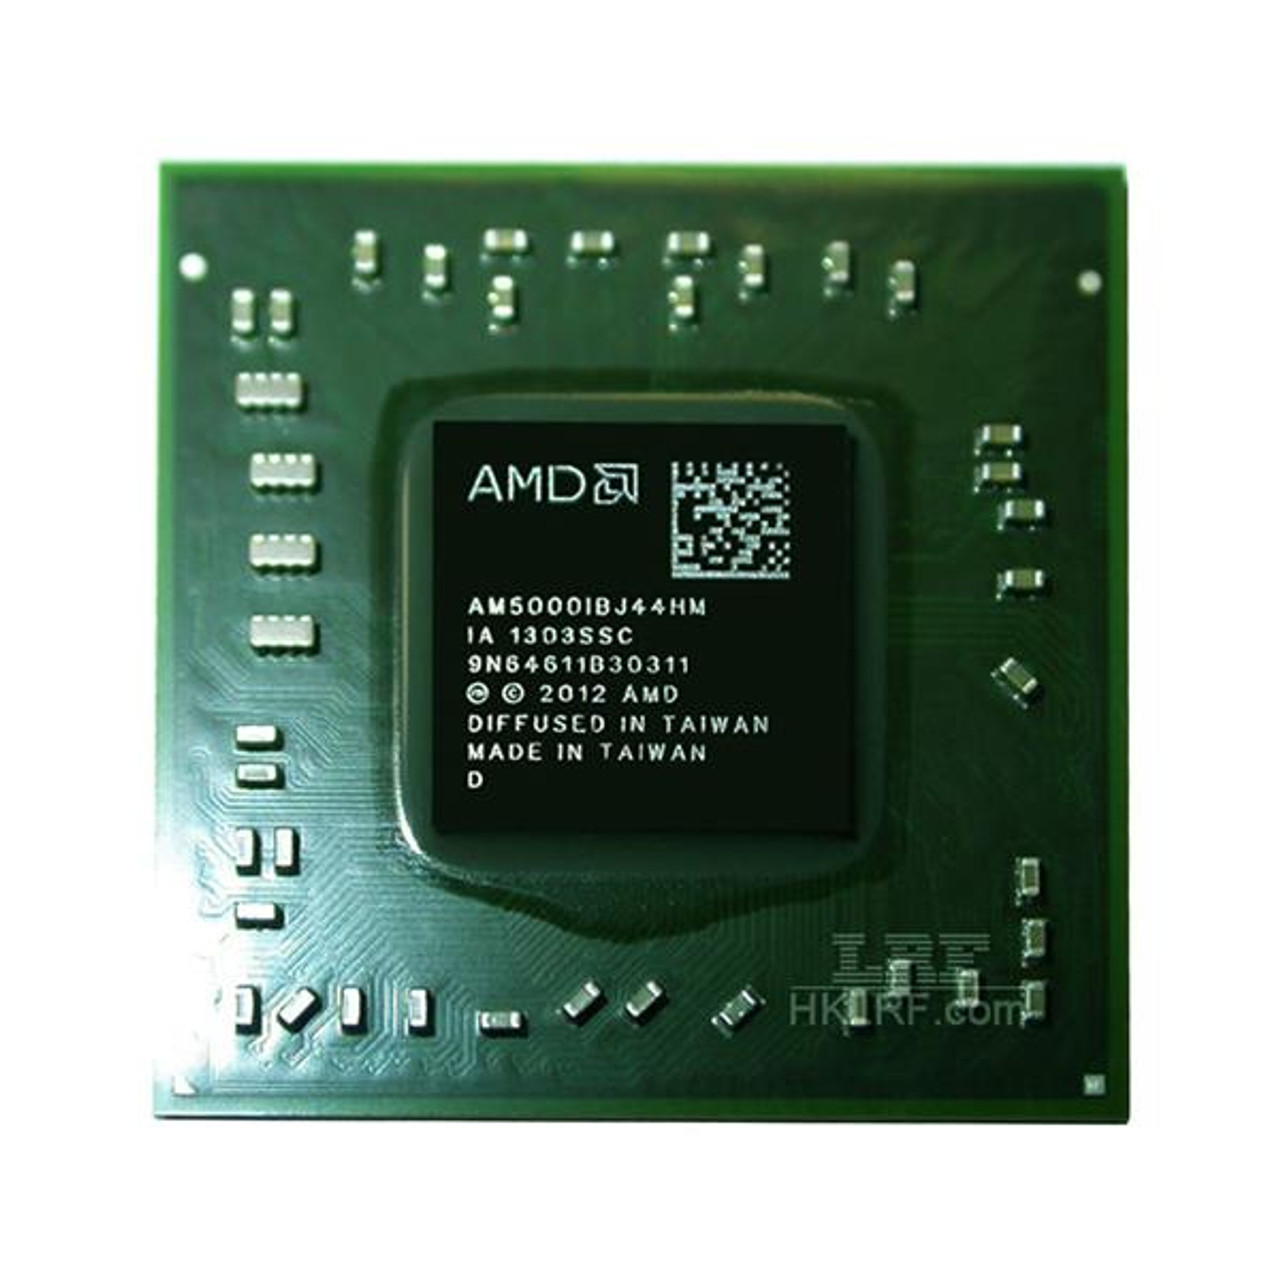 AMD A4-5000 Quad-Core 1.50GHz 2MB L2 Cache Socket FT3 Processor